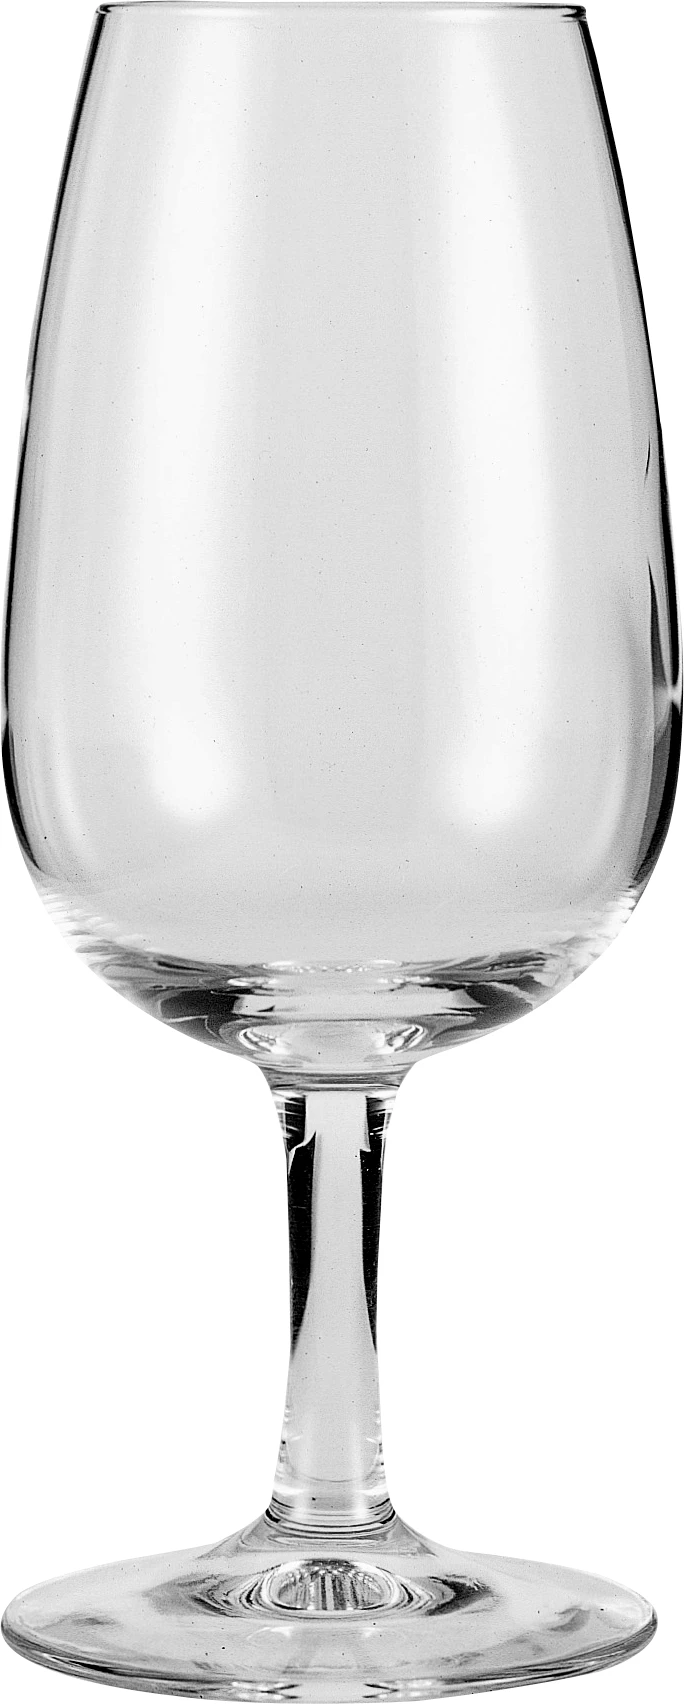 Arcoroc Vap Viticole smageglas, 21 cl